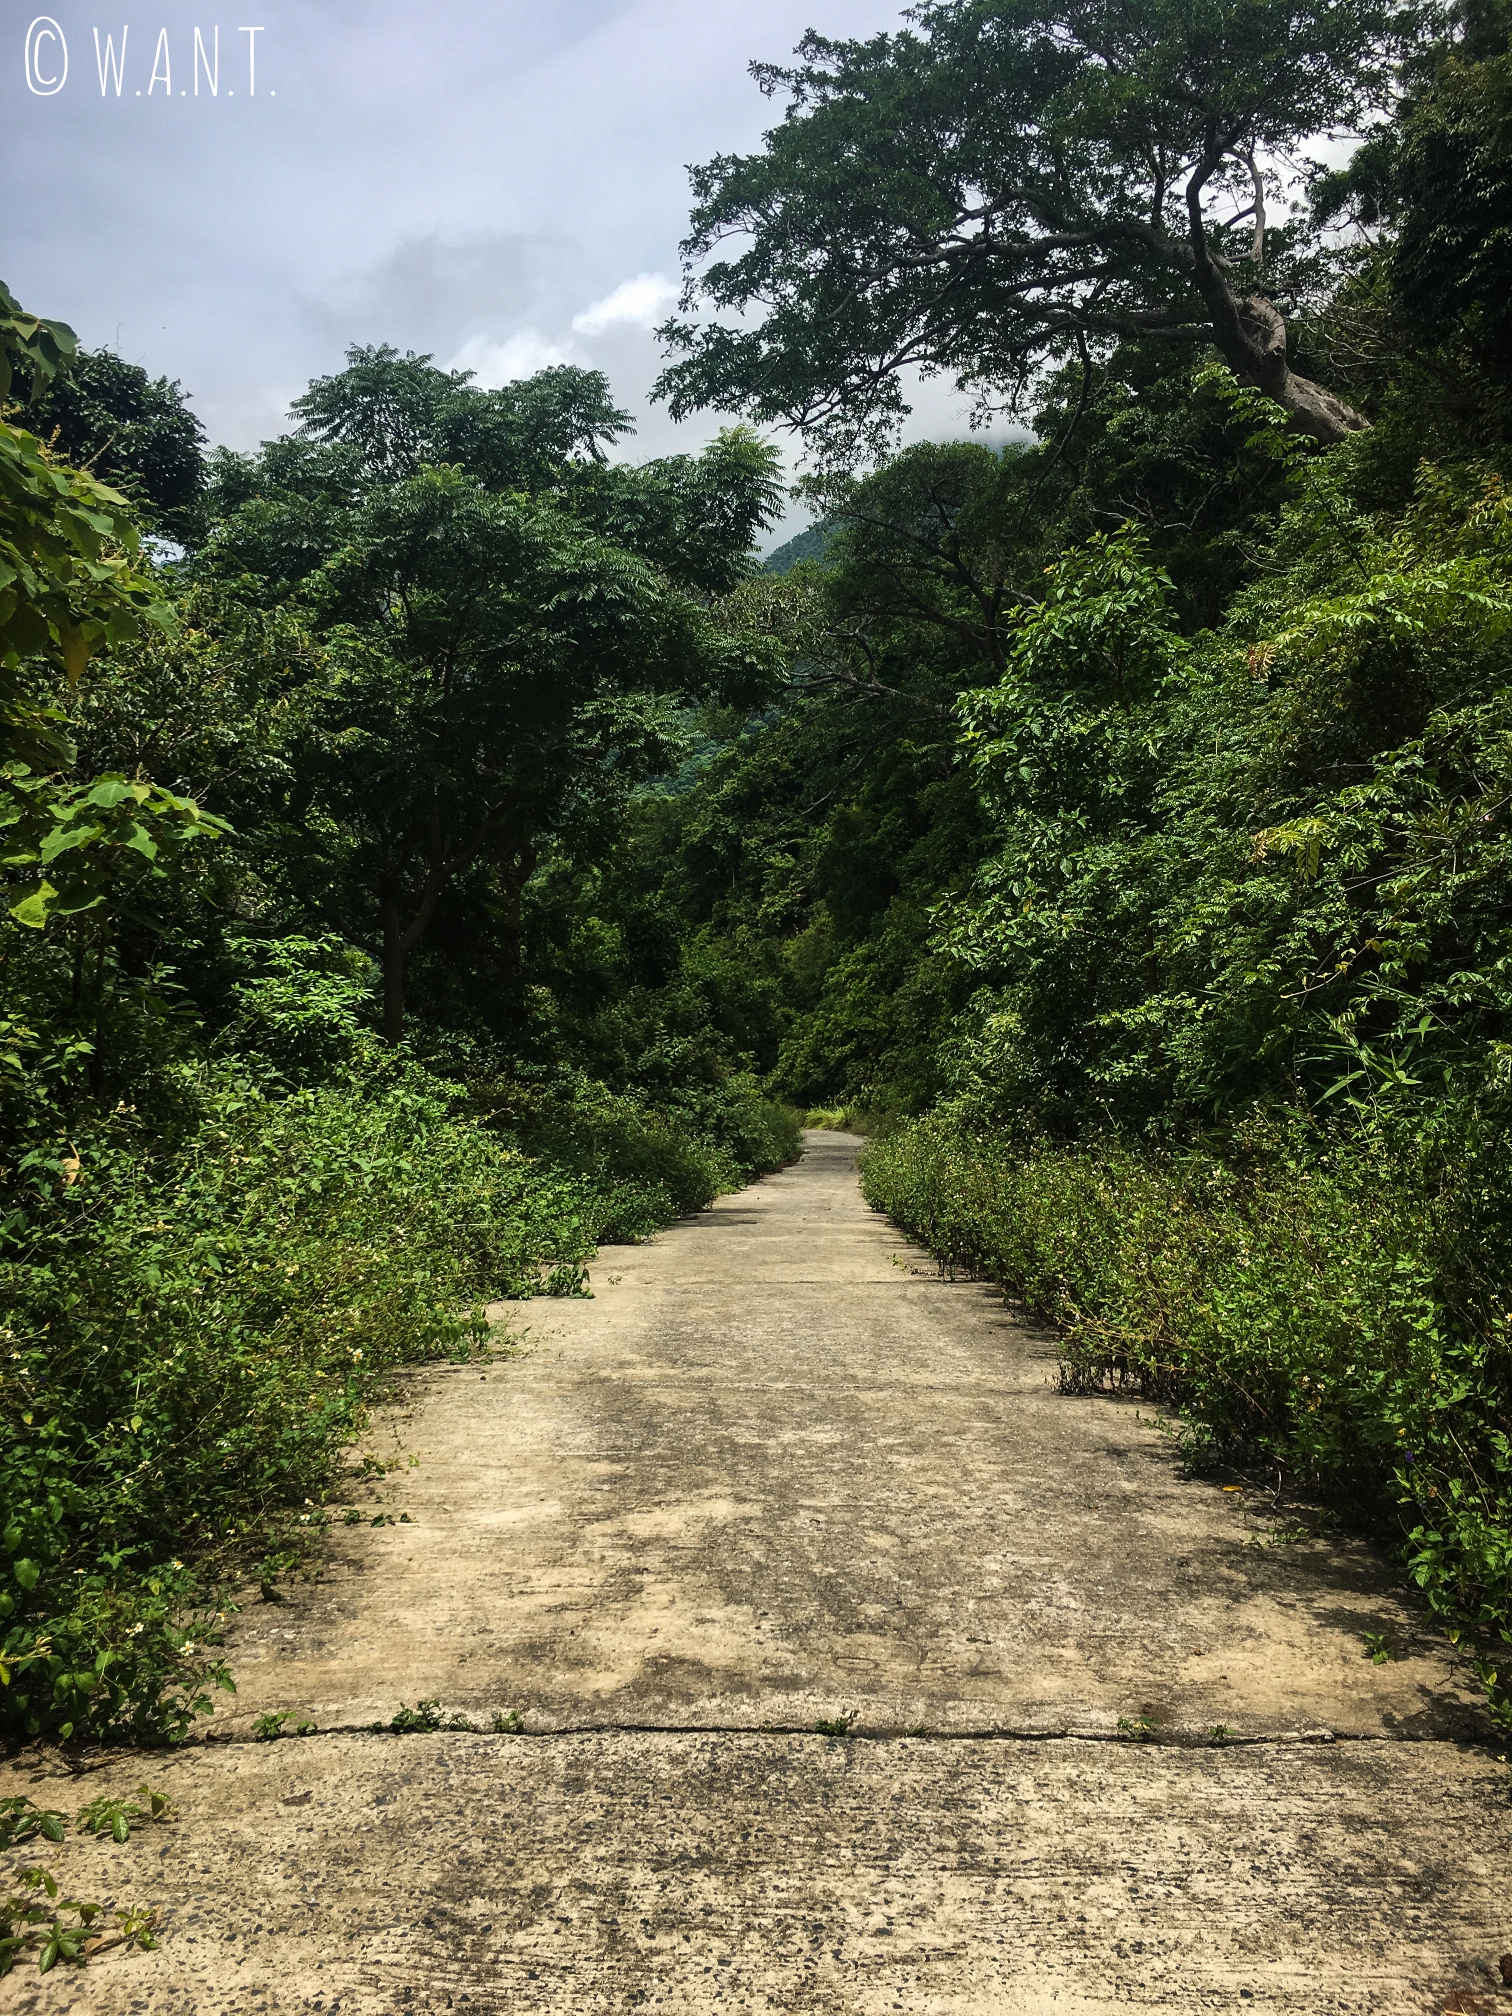 Route déserte et entourée de végétation de la presqu'île Son Tra